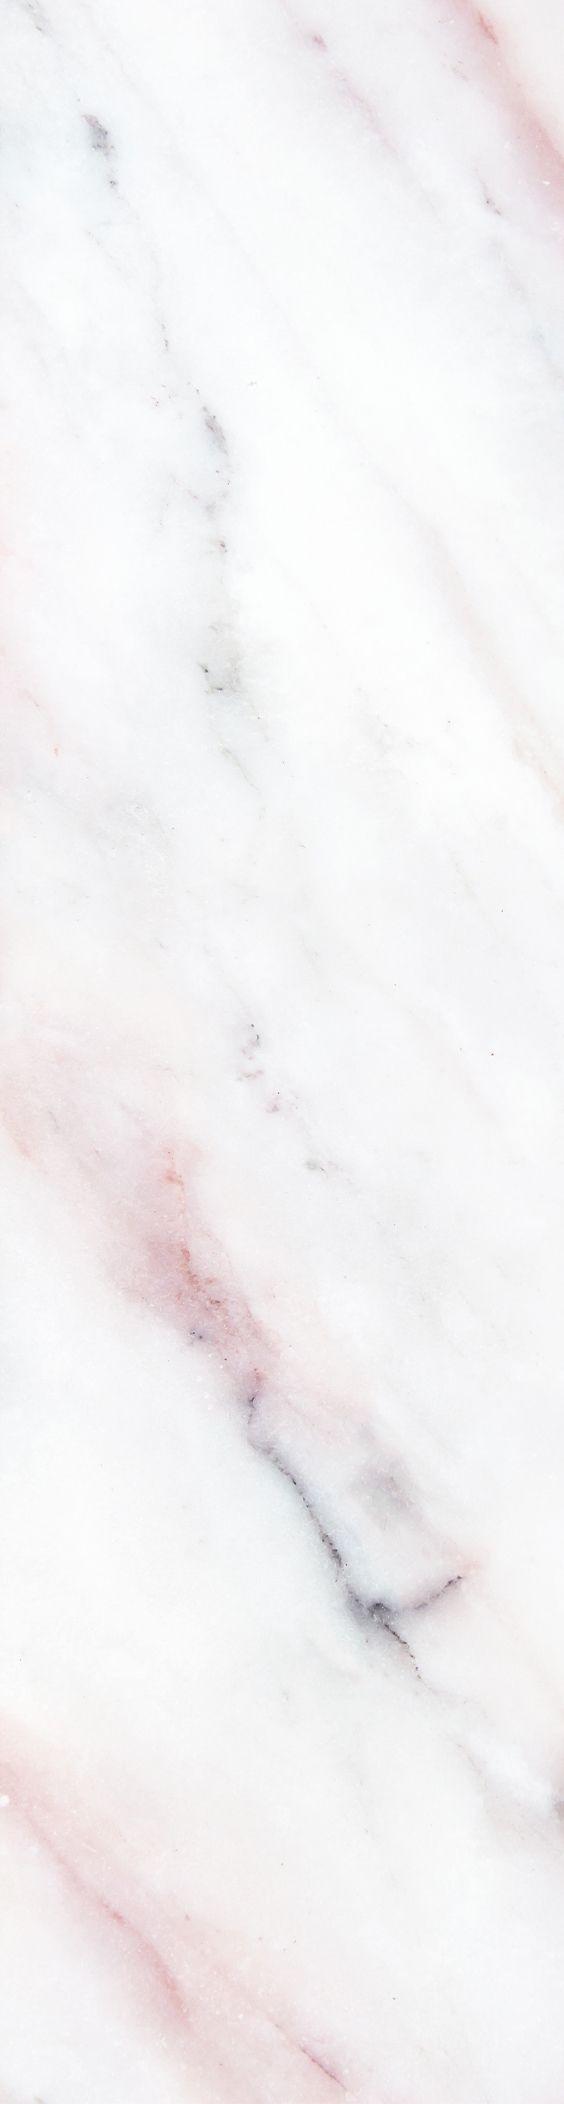 Hình nền đá cẩm thạch màu hồng nhạt 564x2104 - Hình nền 4K sống